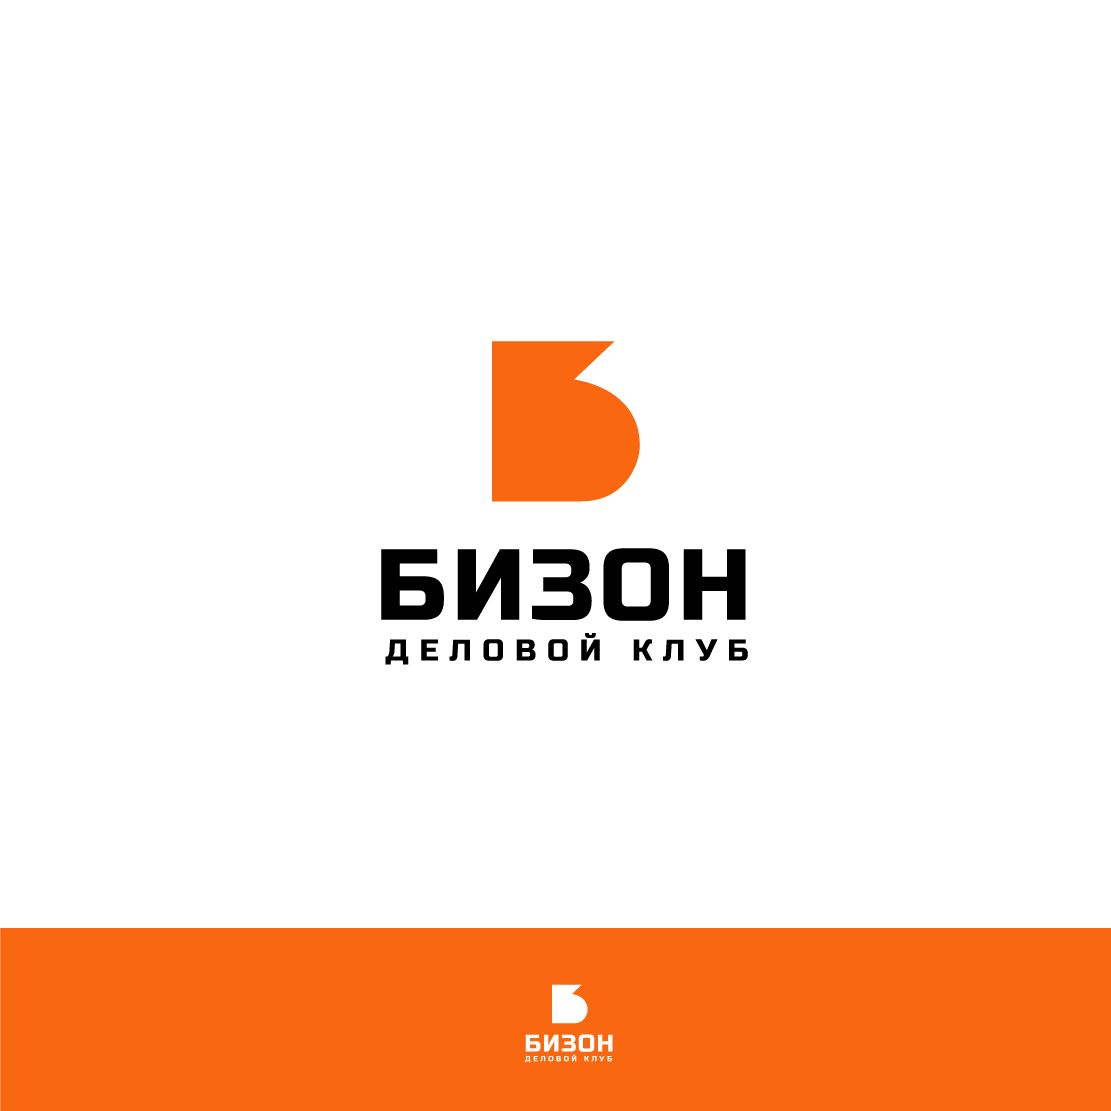 Логотип для «БИЗОН» или «БИЗНЕС-ЗОНА» (полное название) - дизайнер GVV